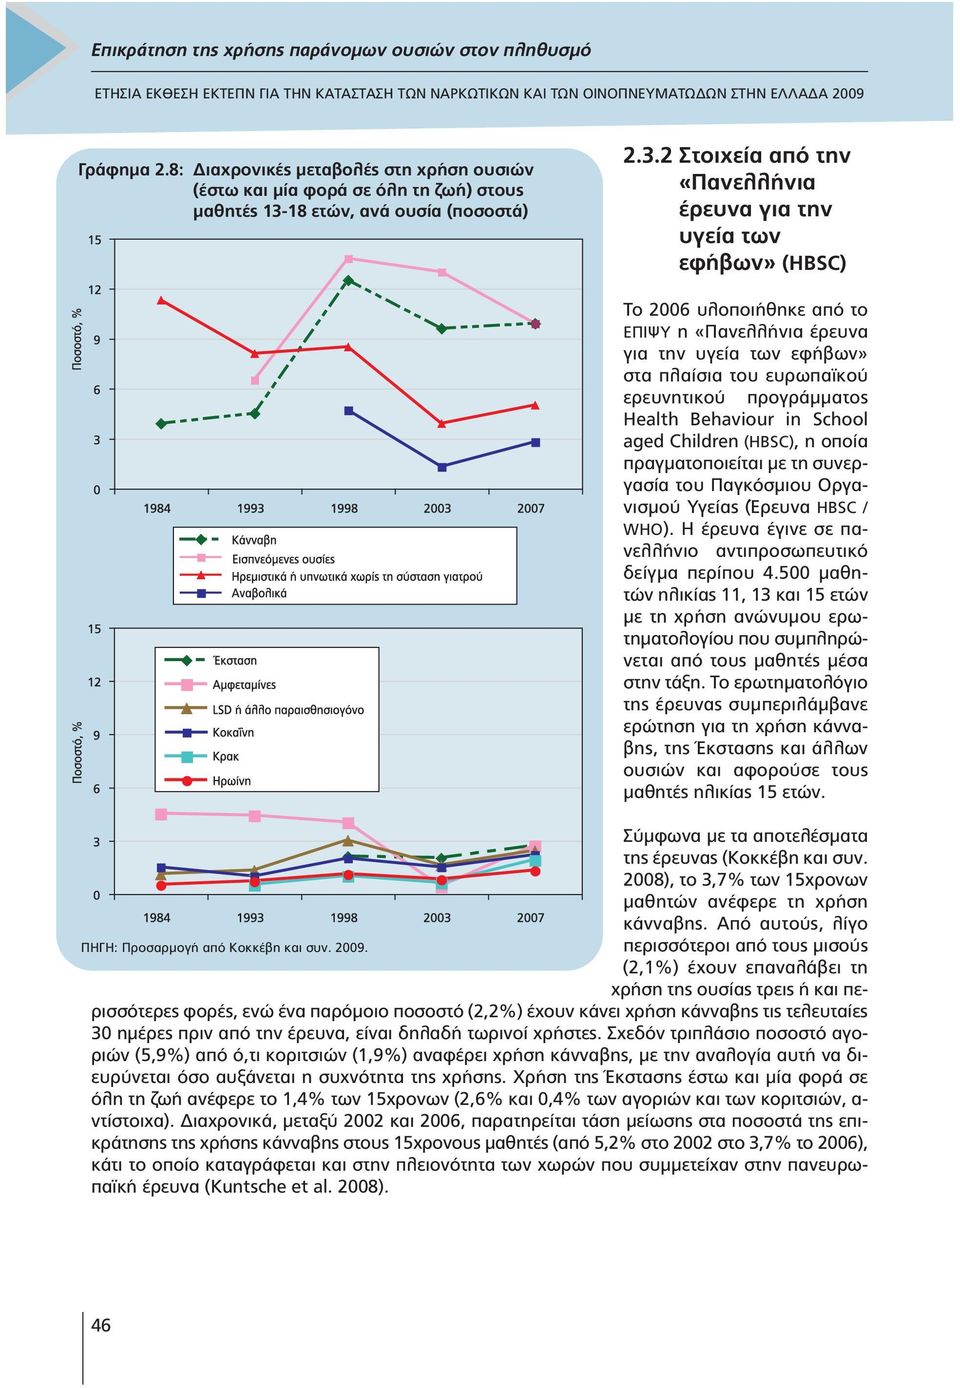 2 Στοιχεία από την «Πανελλήνια έρευνα για την υγεία των εφήβων» (HBSC) Το 2006 υλοποιήθηκε από το ΕΠΙΨΥ η «Πανελλήνια έρευνα για την υγεία των εφήβων» στα πλαίσια του ευρωπαϊκού ερευνητικού